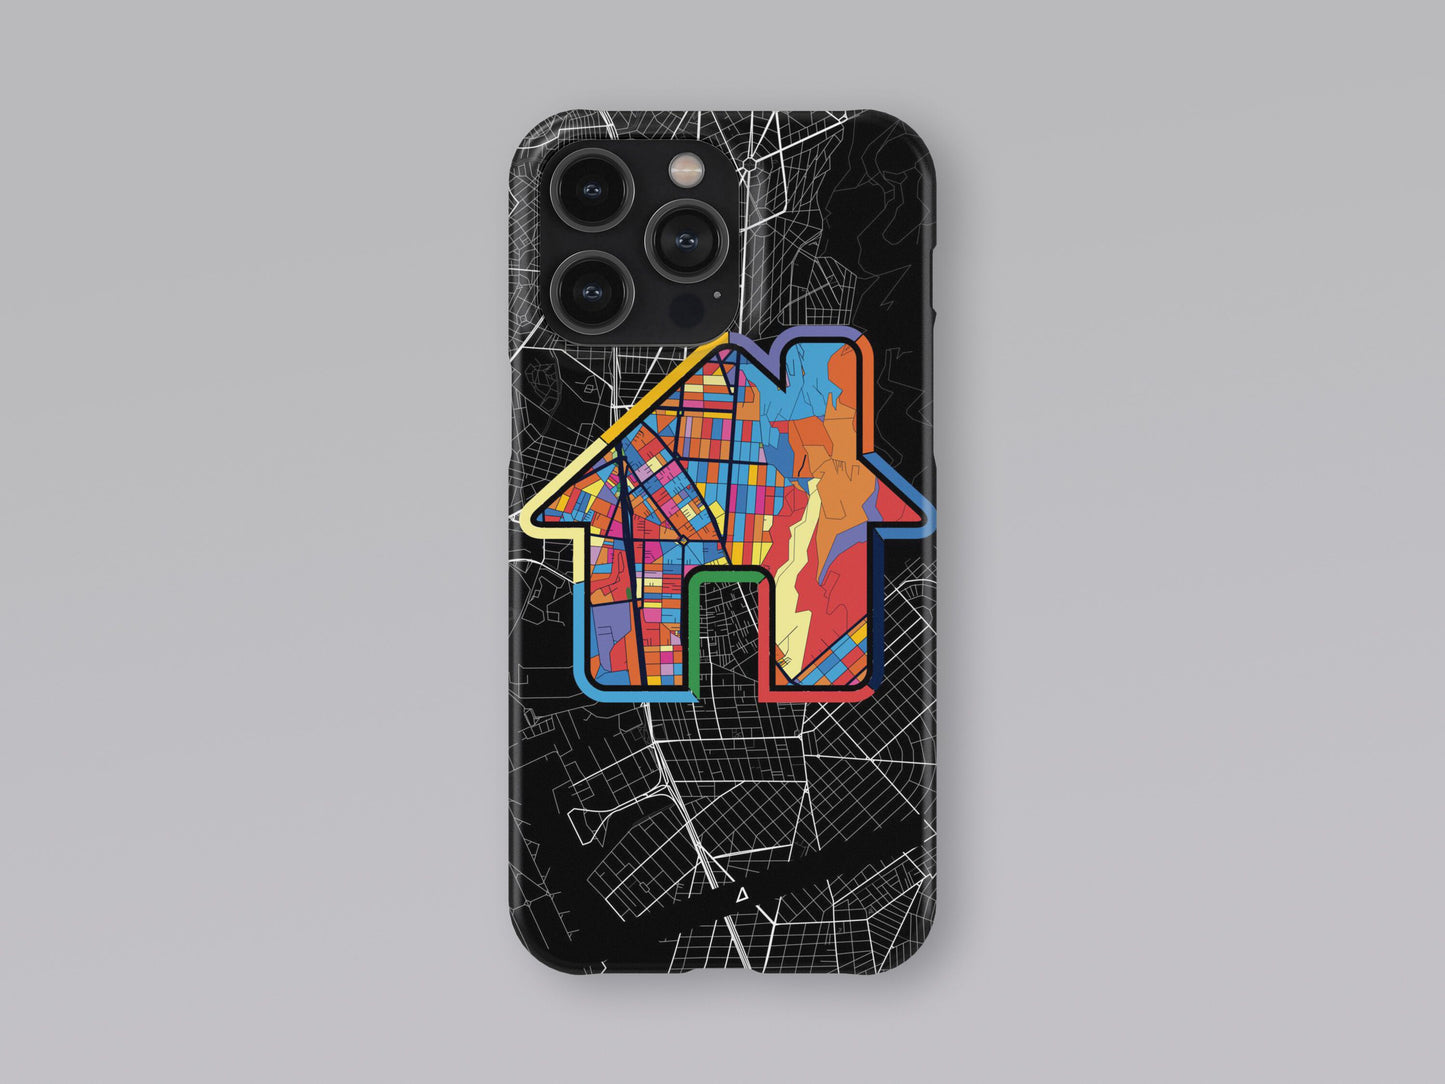 Αργυρουπολη Ελλαδα slim phone case with colorful icon 3